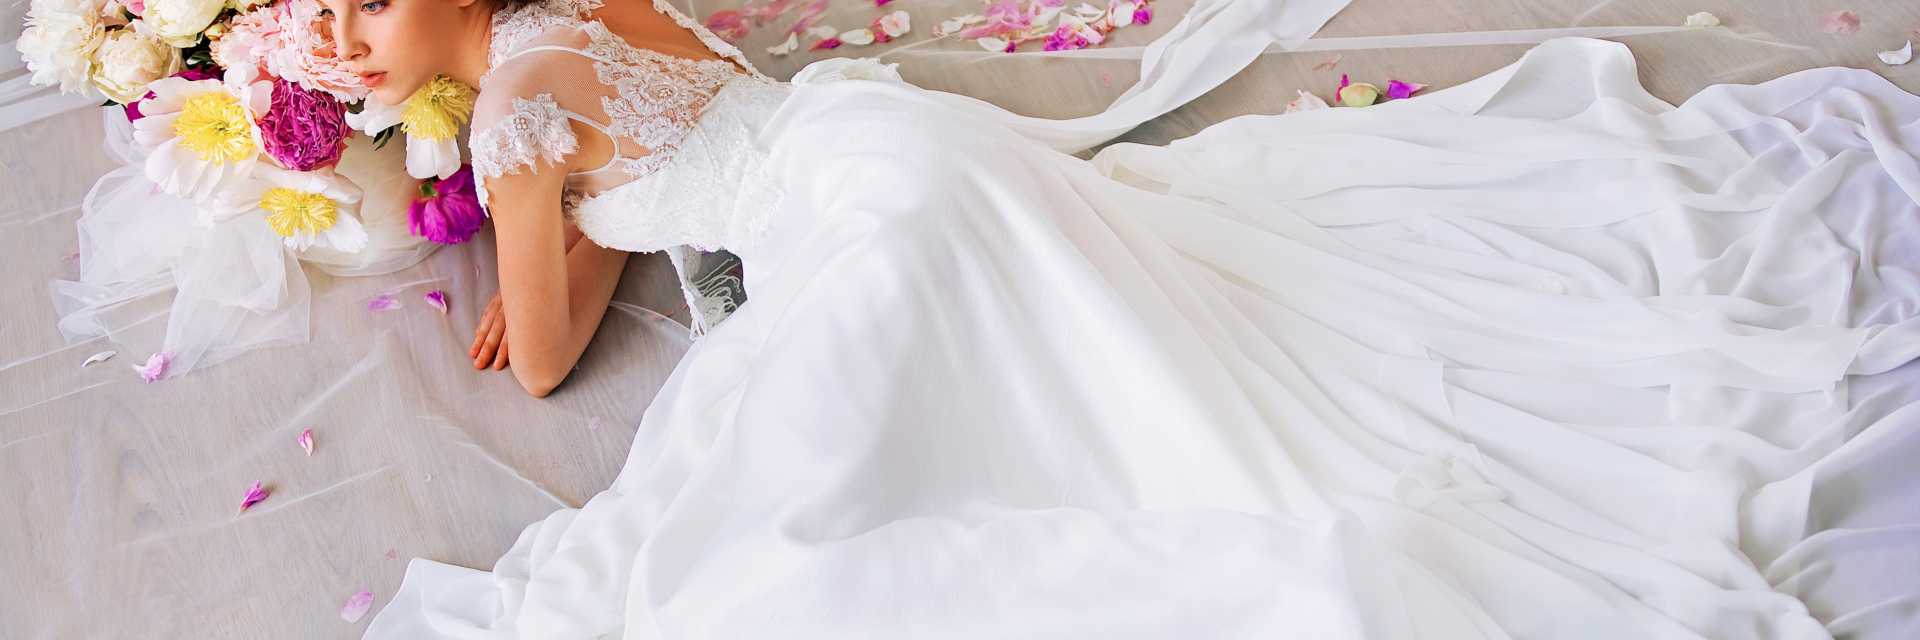 Сонник свадебное платье на себе